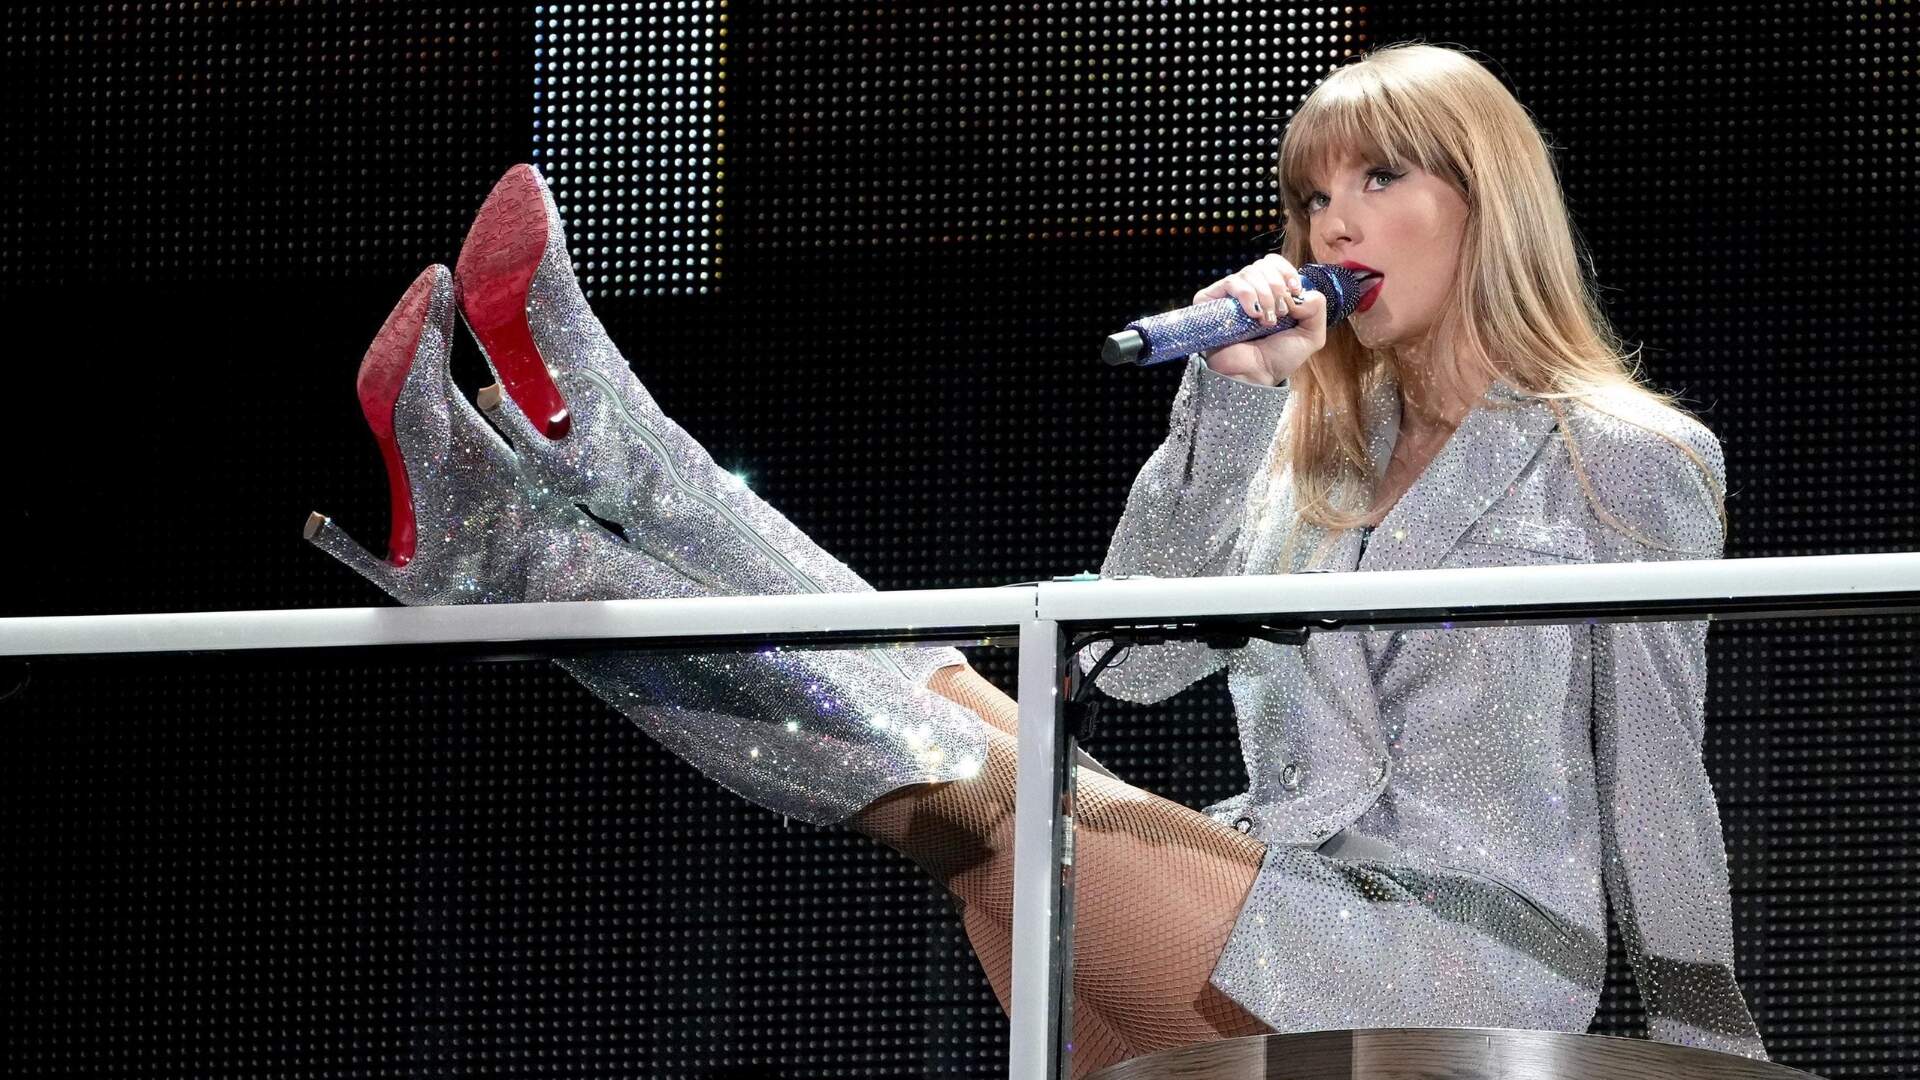 Ingressos esgotados? Sites caem após Taylor Swift anunciar datas de estreia do ‘The Eras Tour’ nos cinemas - Metropolitana FM